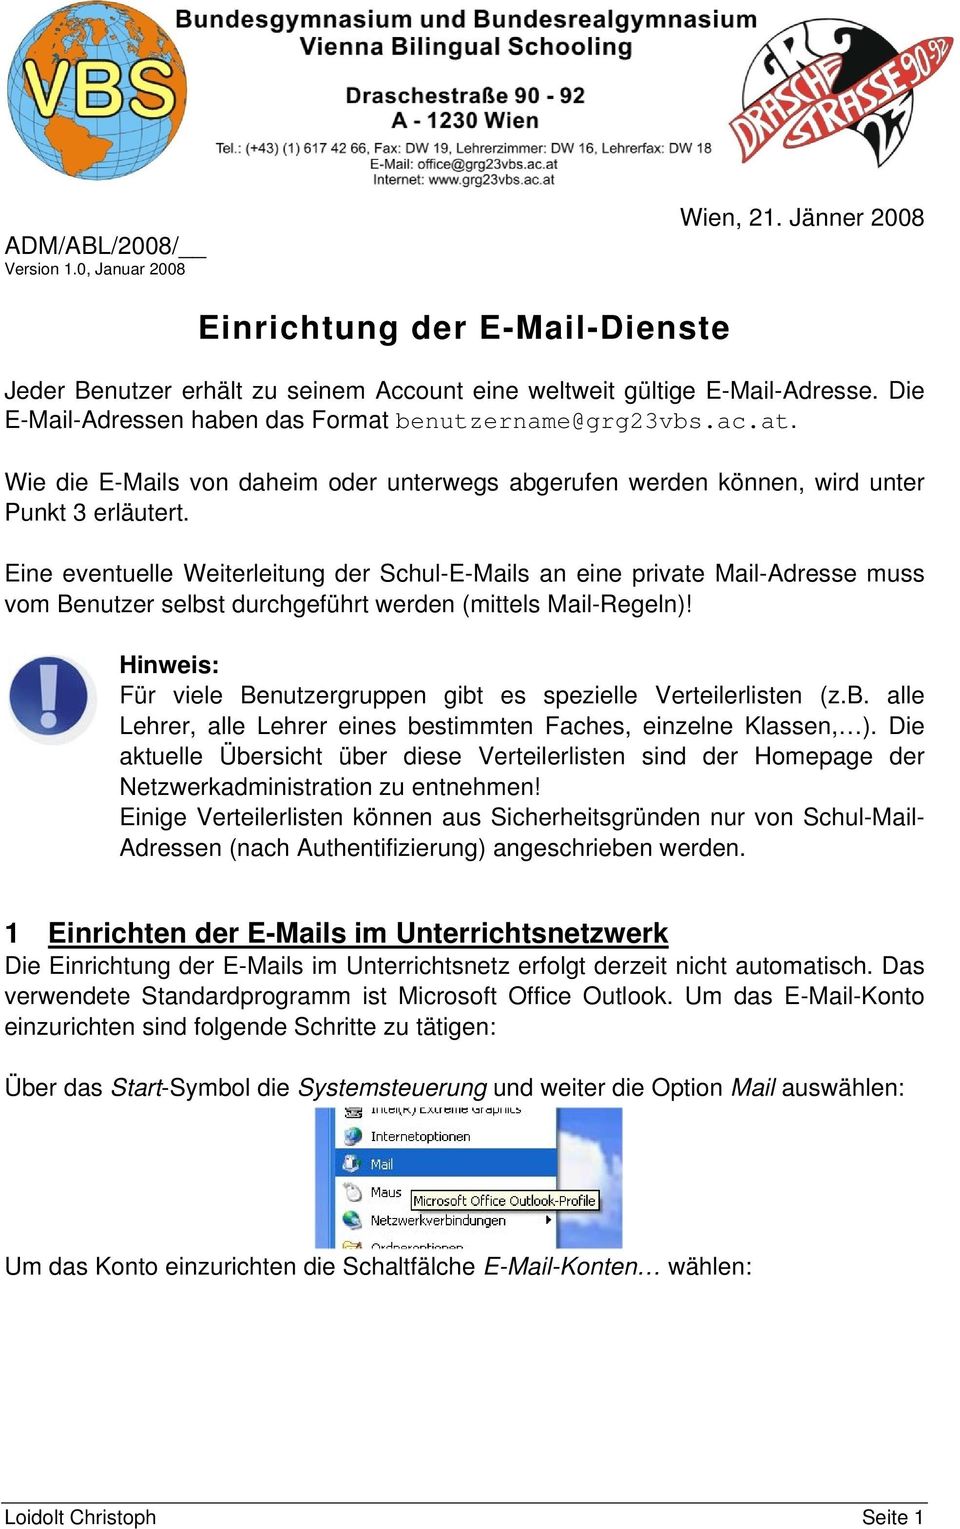 Eine eventuelle Weiterleitung der Schul-E-Mails an eine private Mail-Adresse muss vom Benutzer selbst durchgeführt werden (mittels Mail-Regeln)!